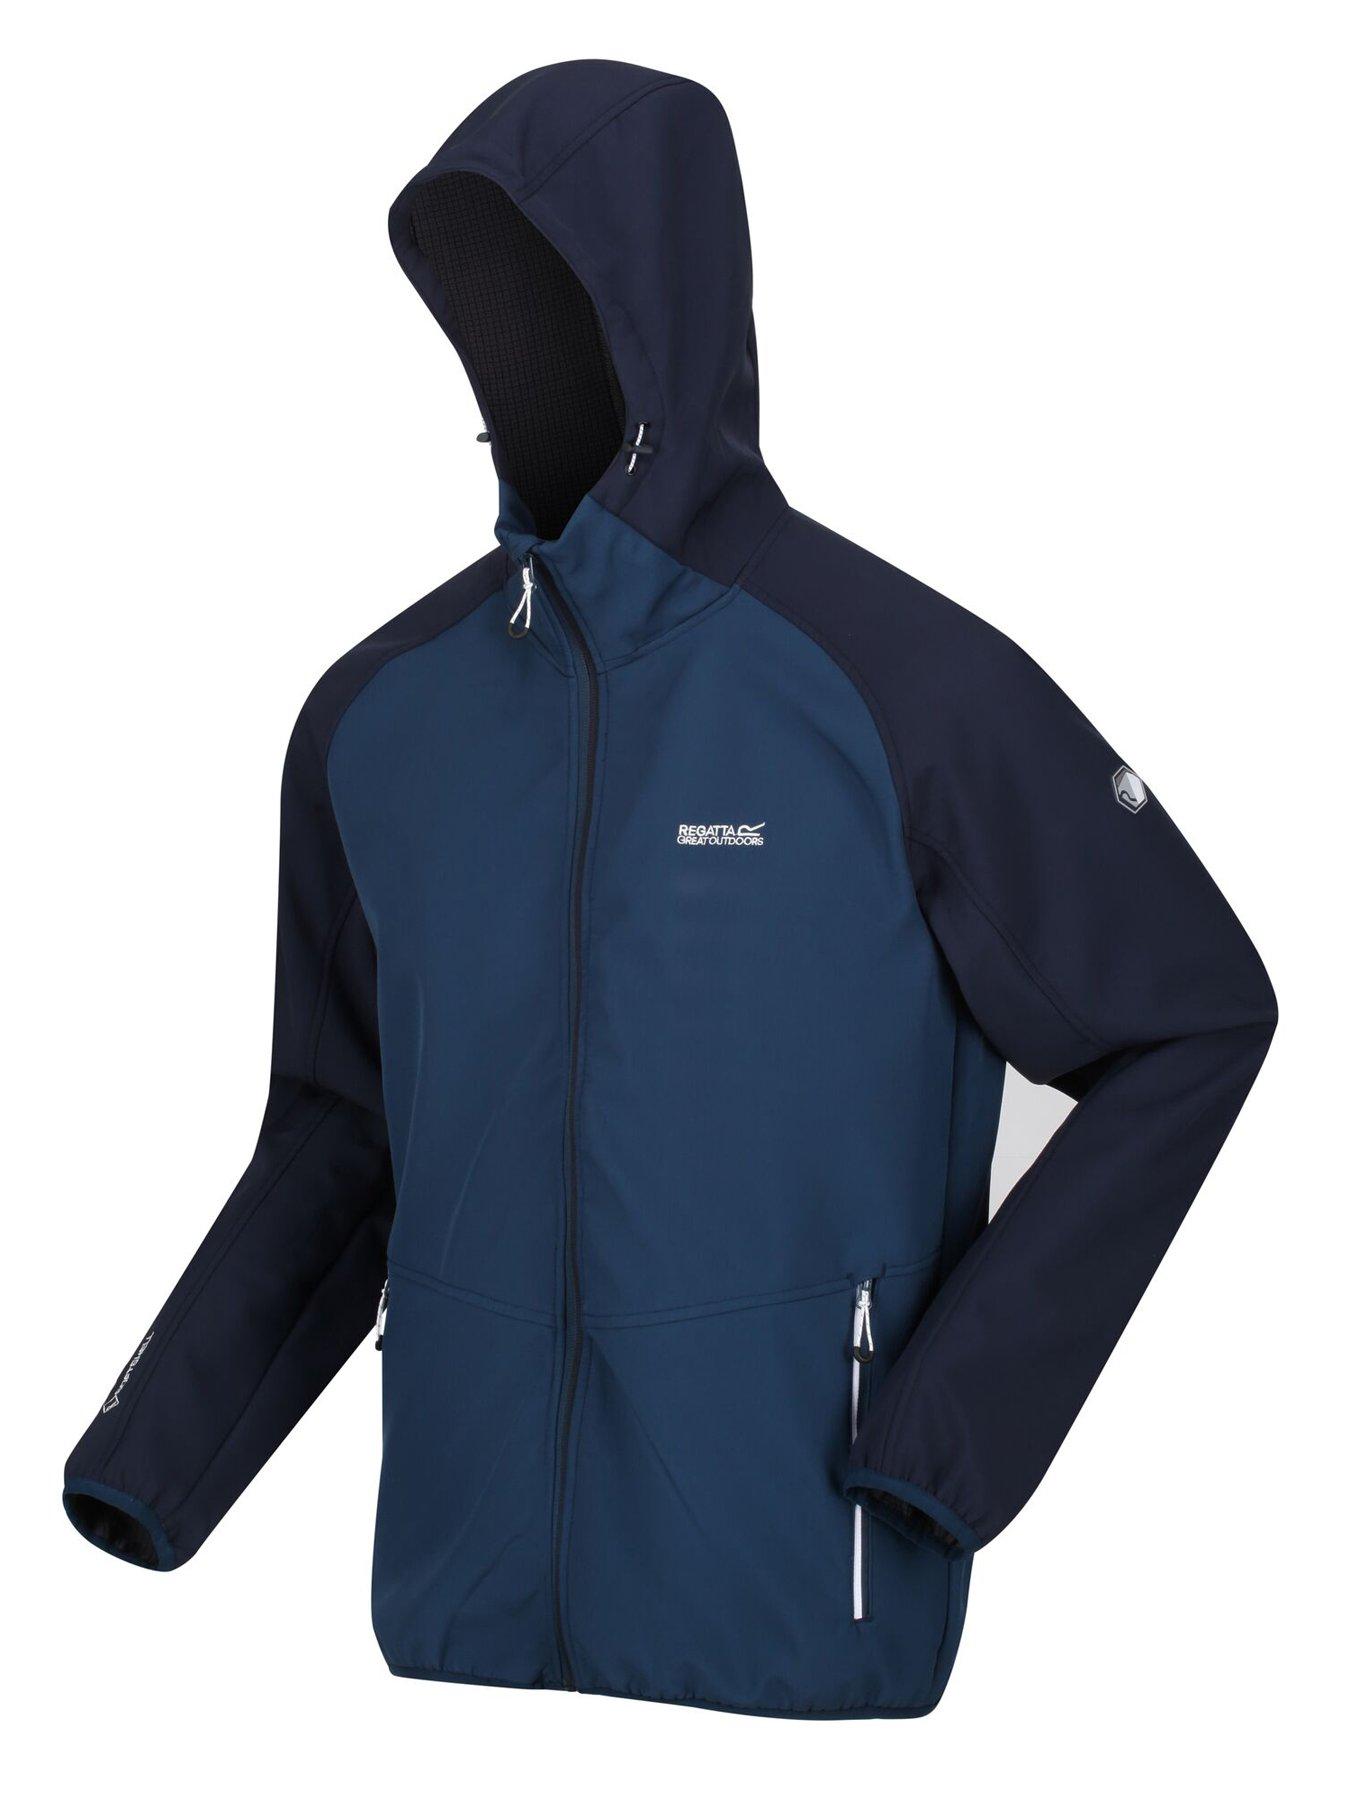 Coats & Jackets Arec Softshell Jacket - Blue/Navy